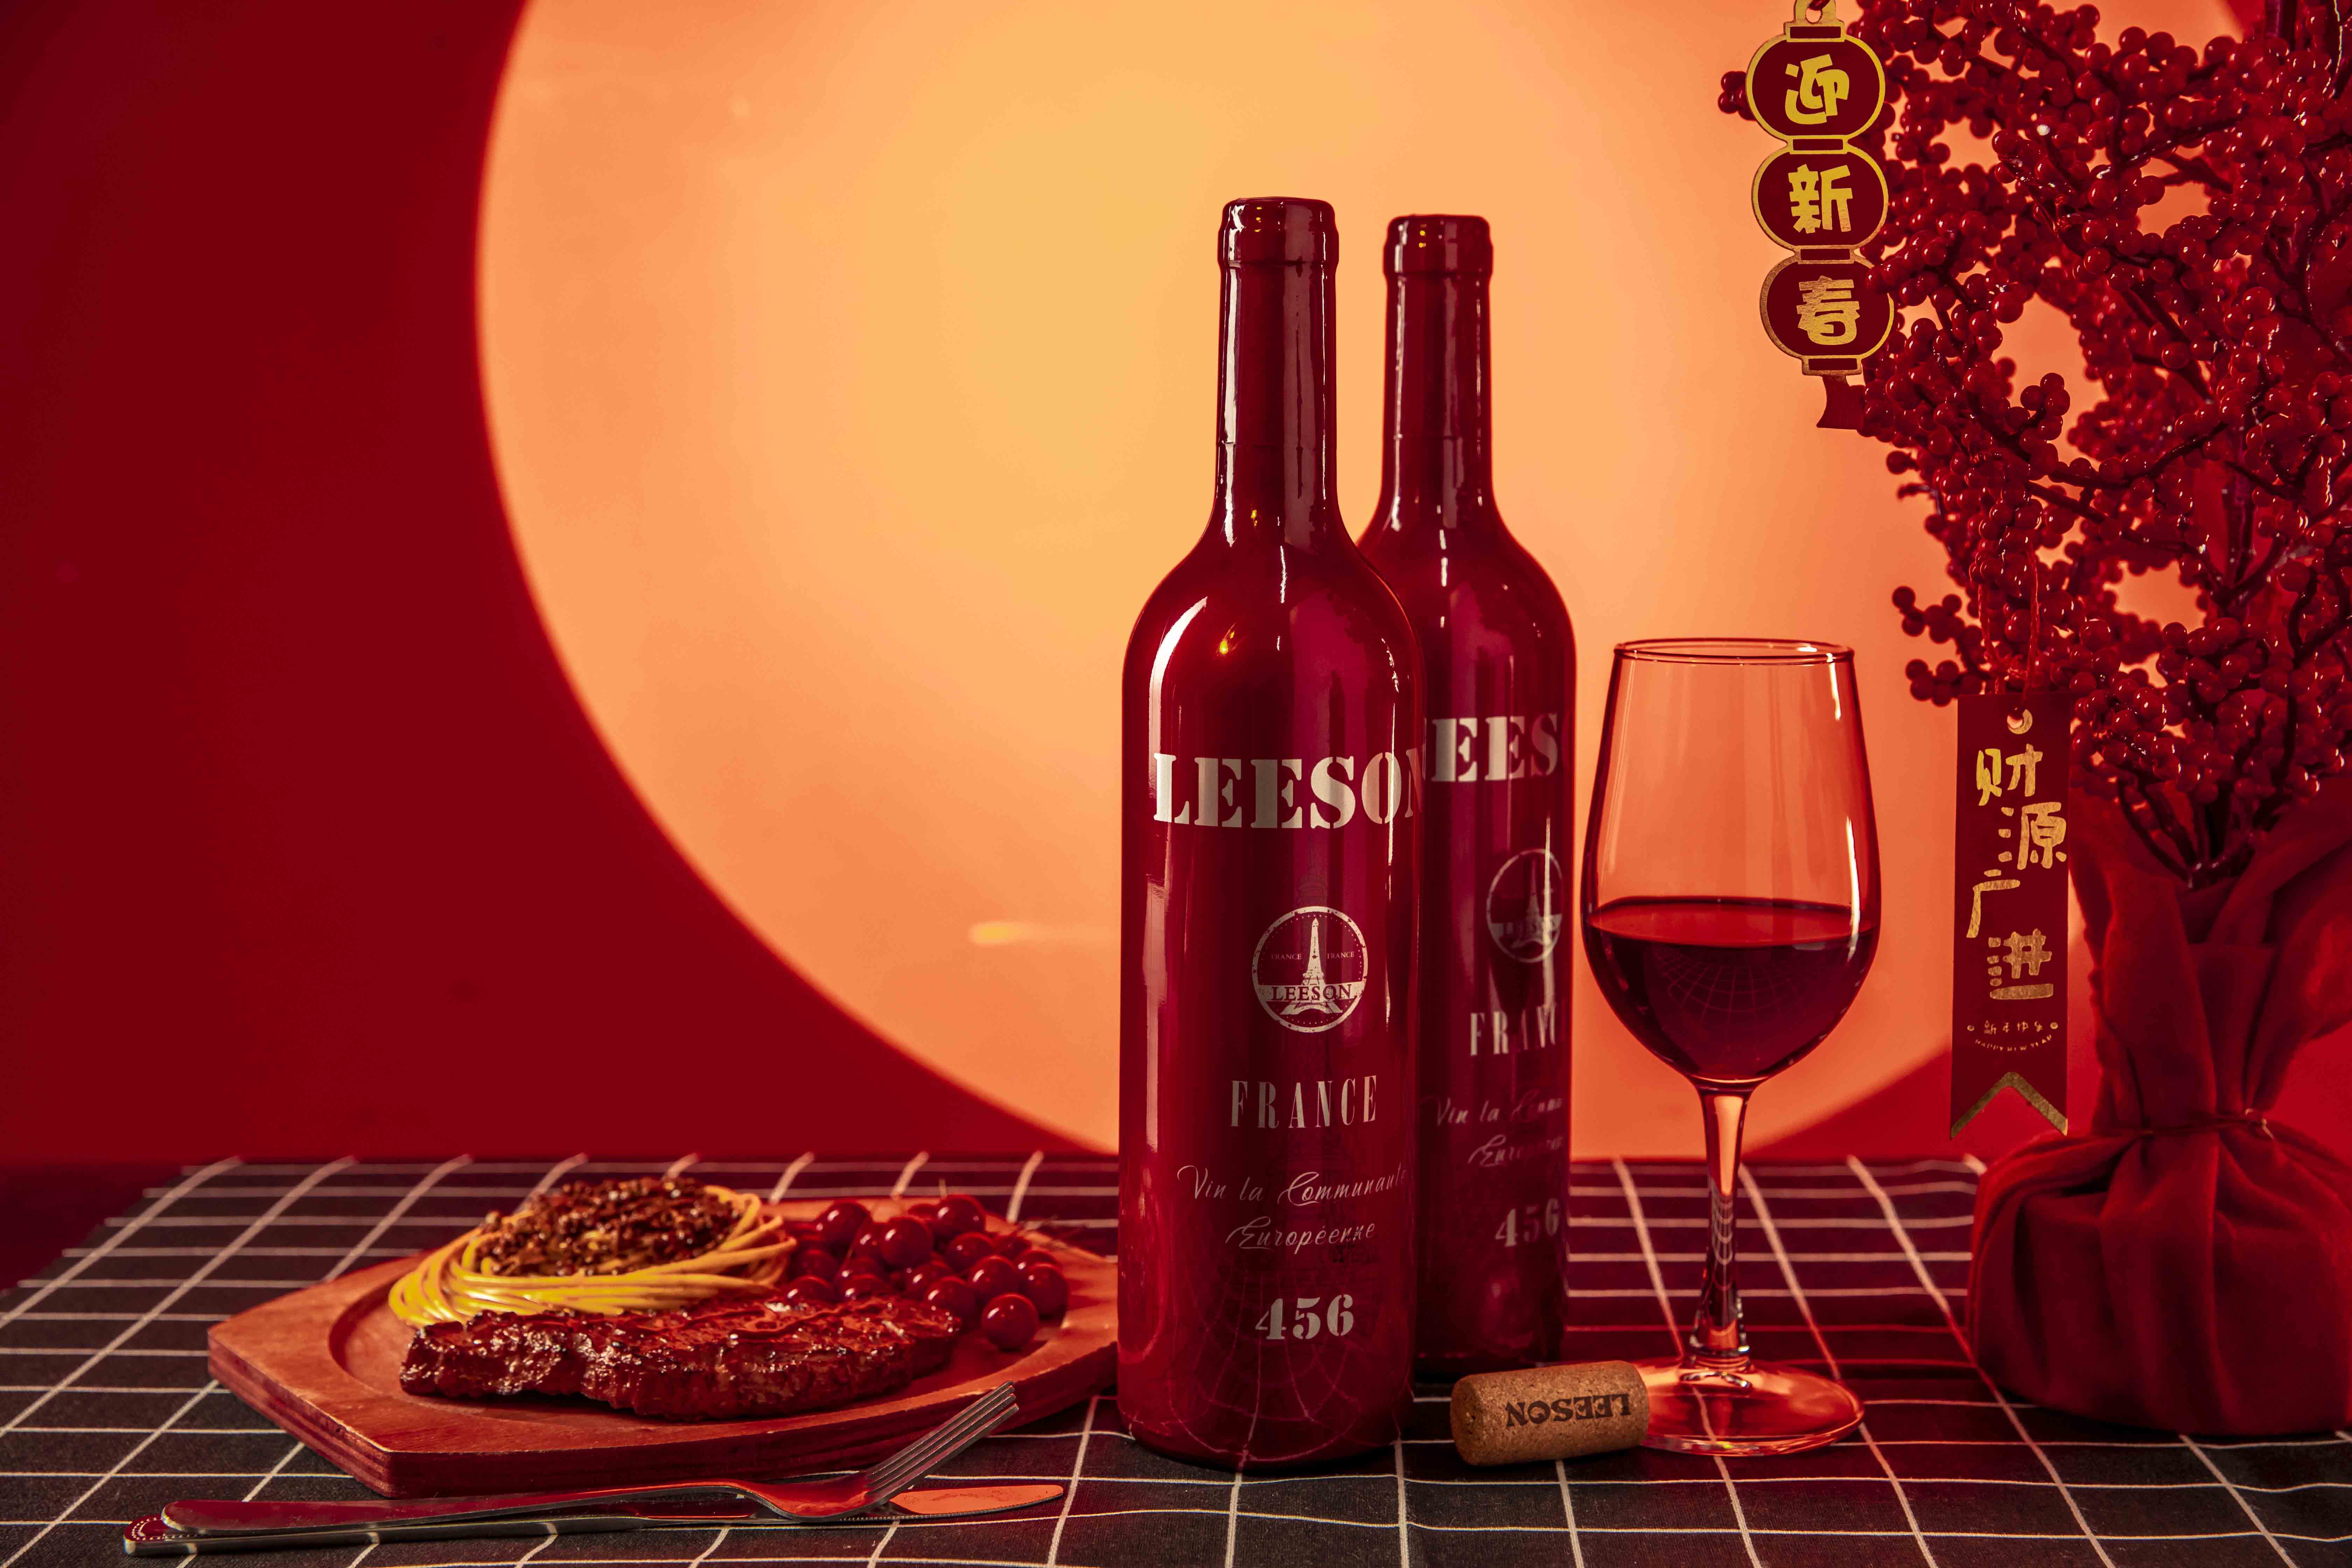 雲倉酒莊品牌雷盛紅酒LEESON分享陳年老酒如何“醒”？